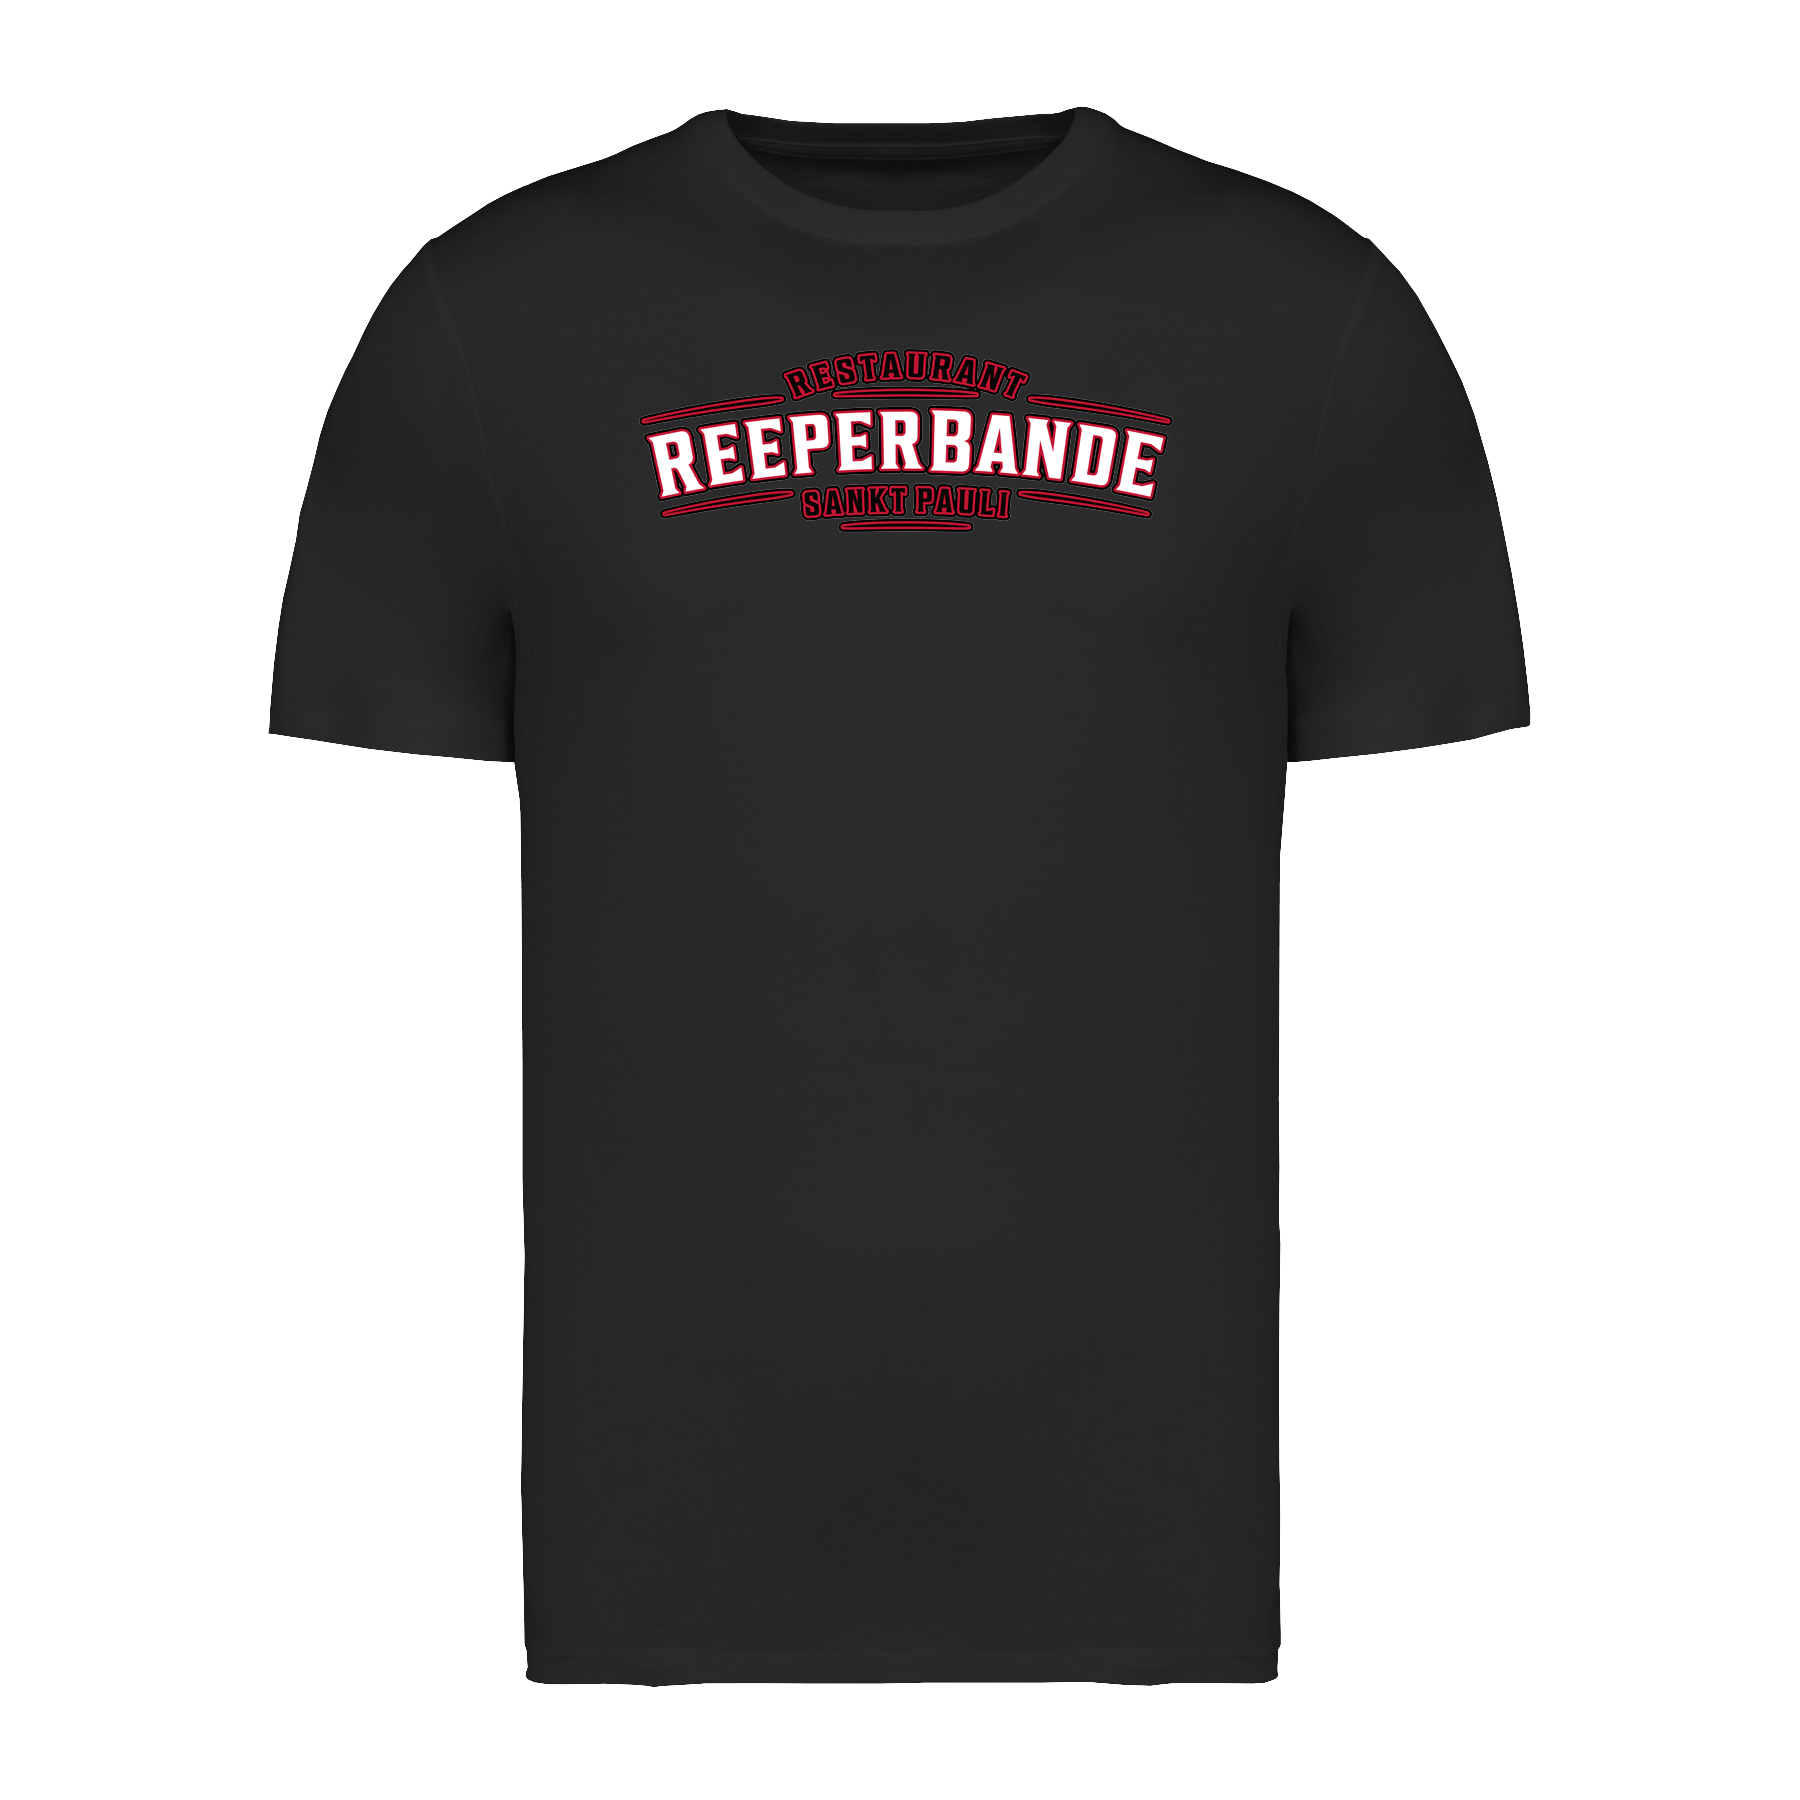 Regular Shirt Reeperbande